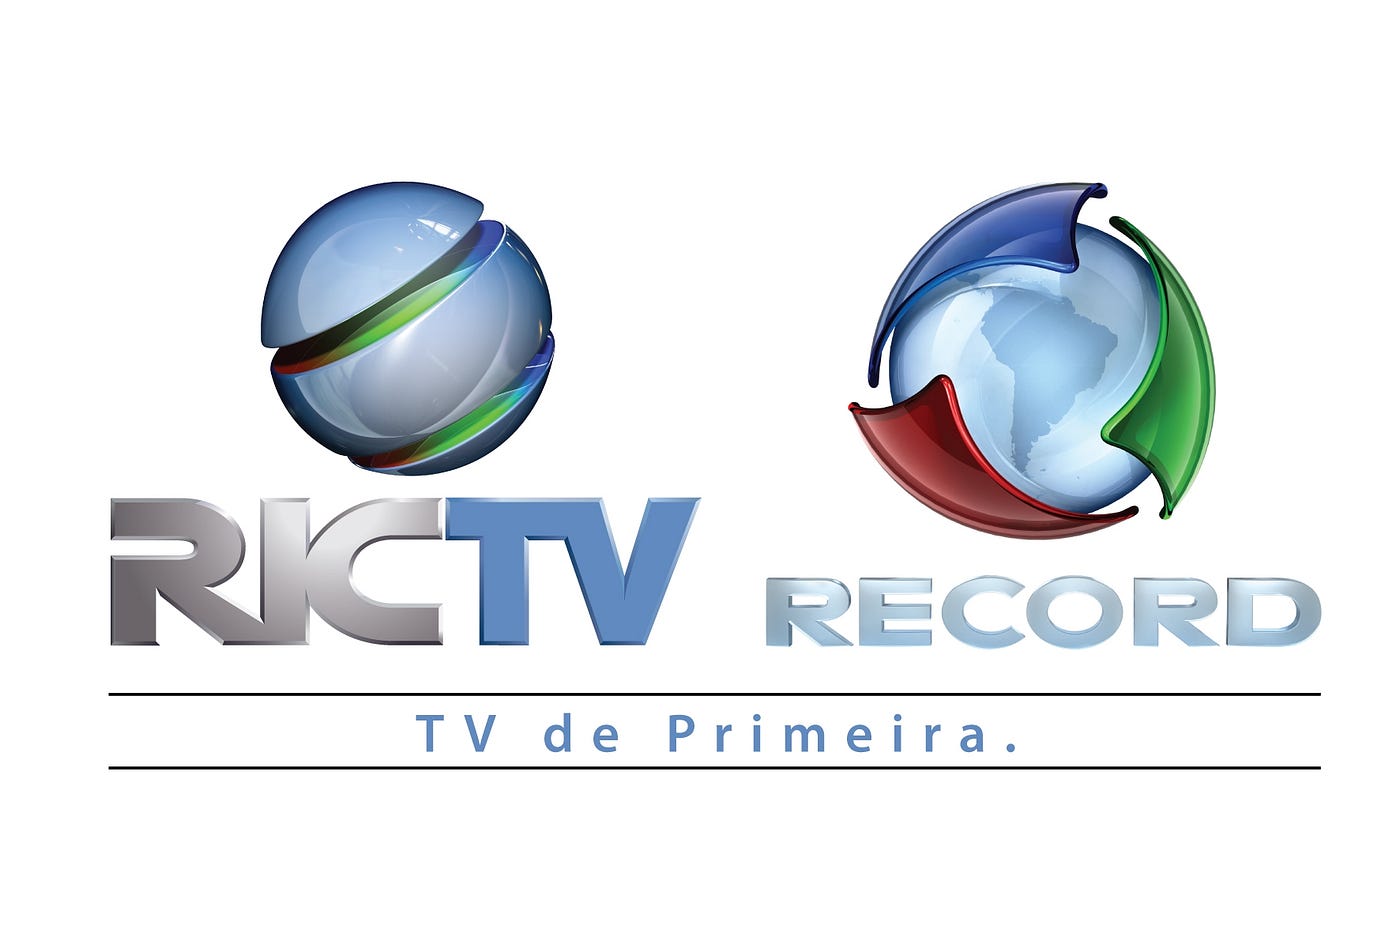 RICTV Record HD no ar em Cunha Porã (SC) | by Mateus Gabi Moreira | Medium